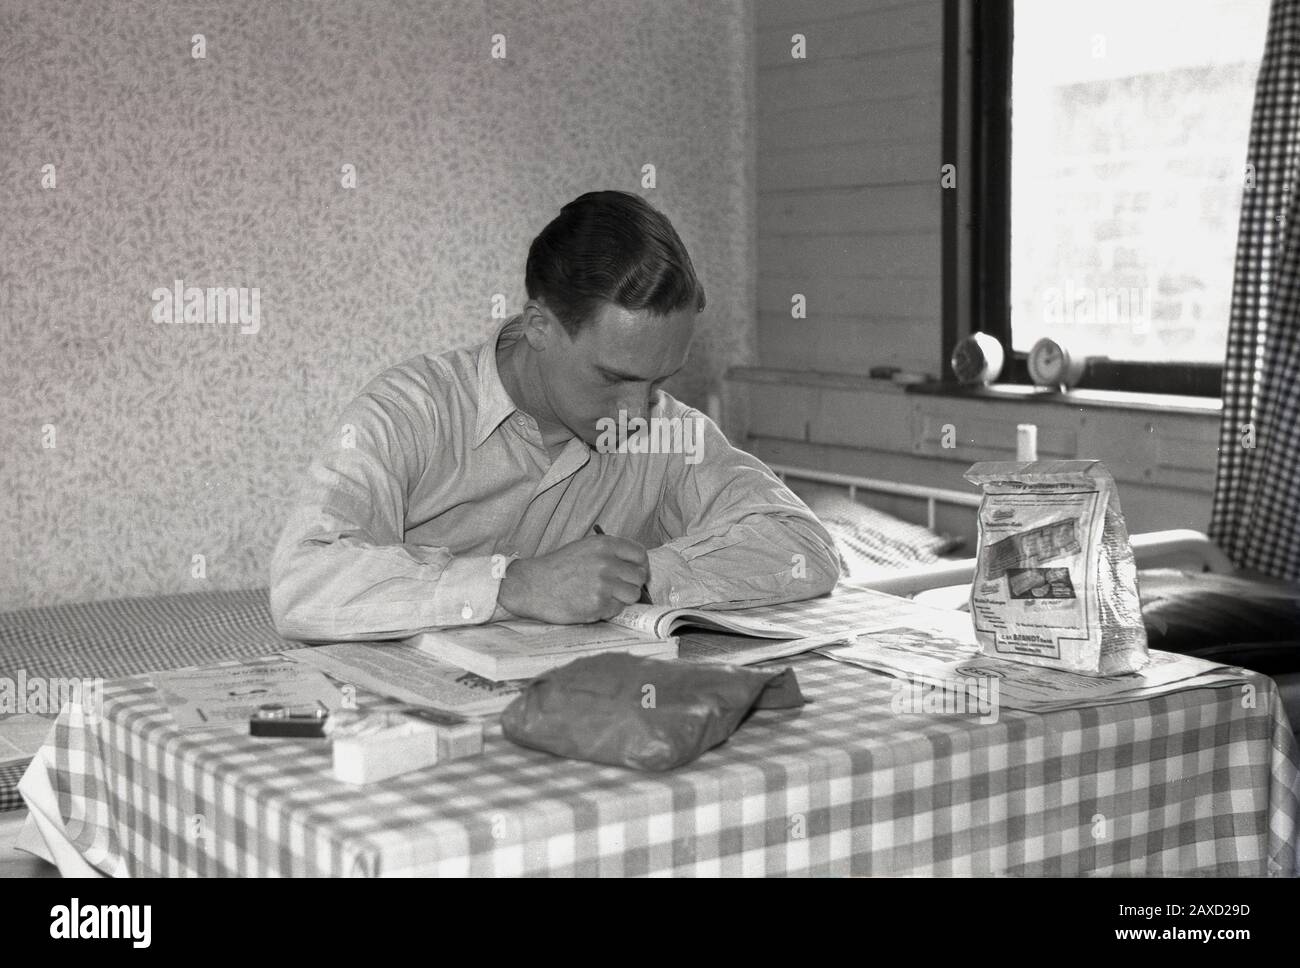 40er Jahre, historisch, Mann in einer Wohnheimat, der an einem mit Vinyl bedeckten Tisch sitzt und etwas in einem Buch studiert, England, Großbritannien. Stockfoto